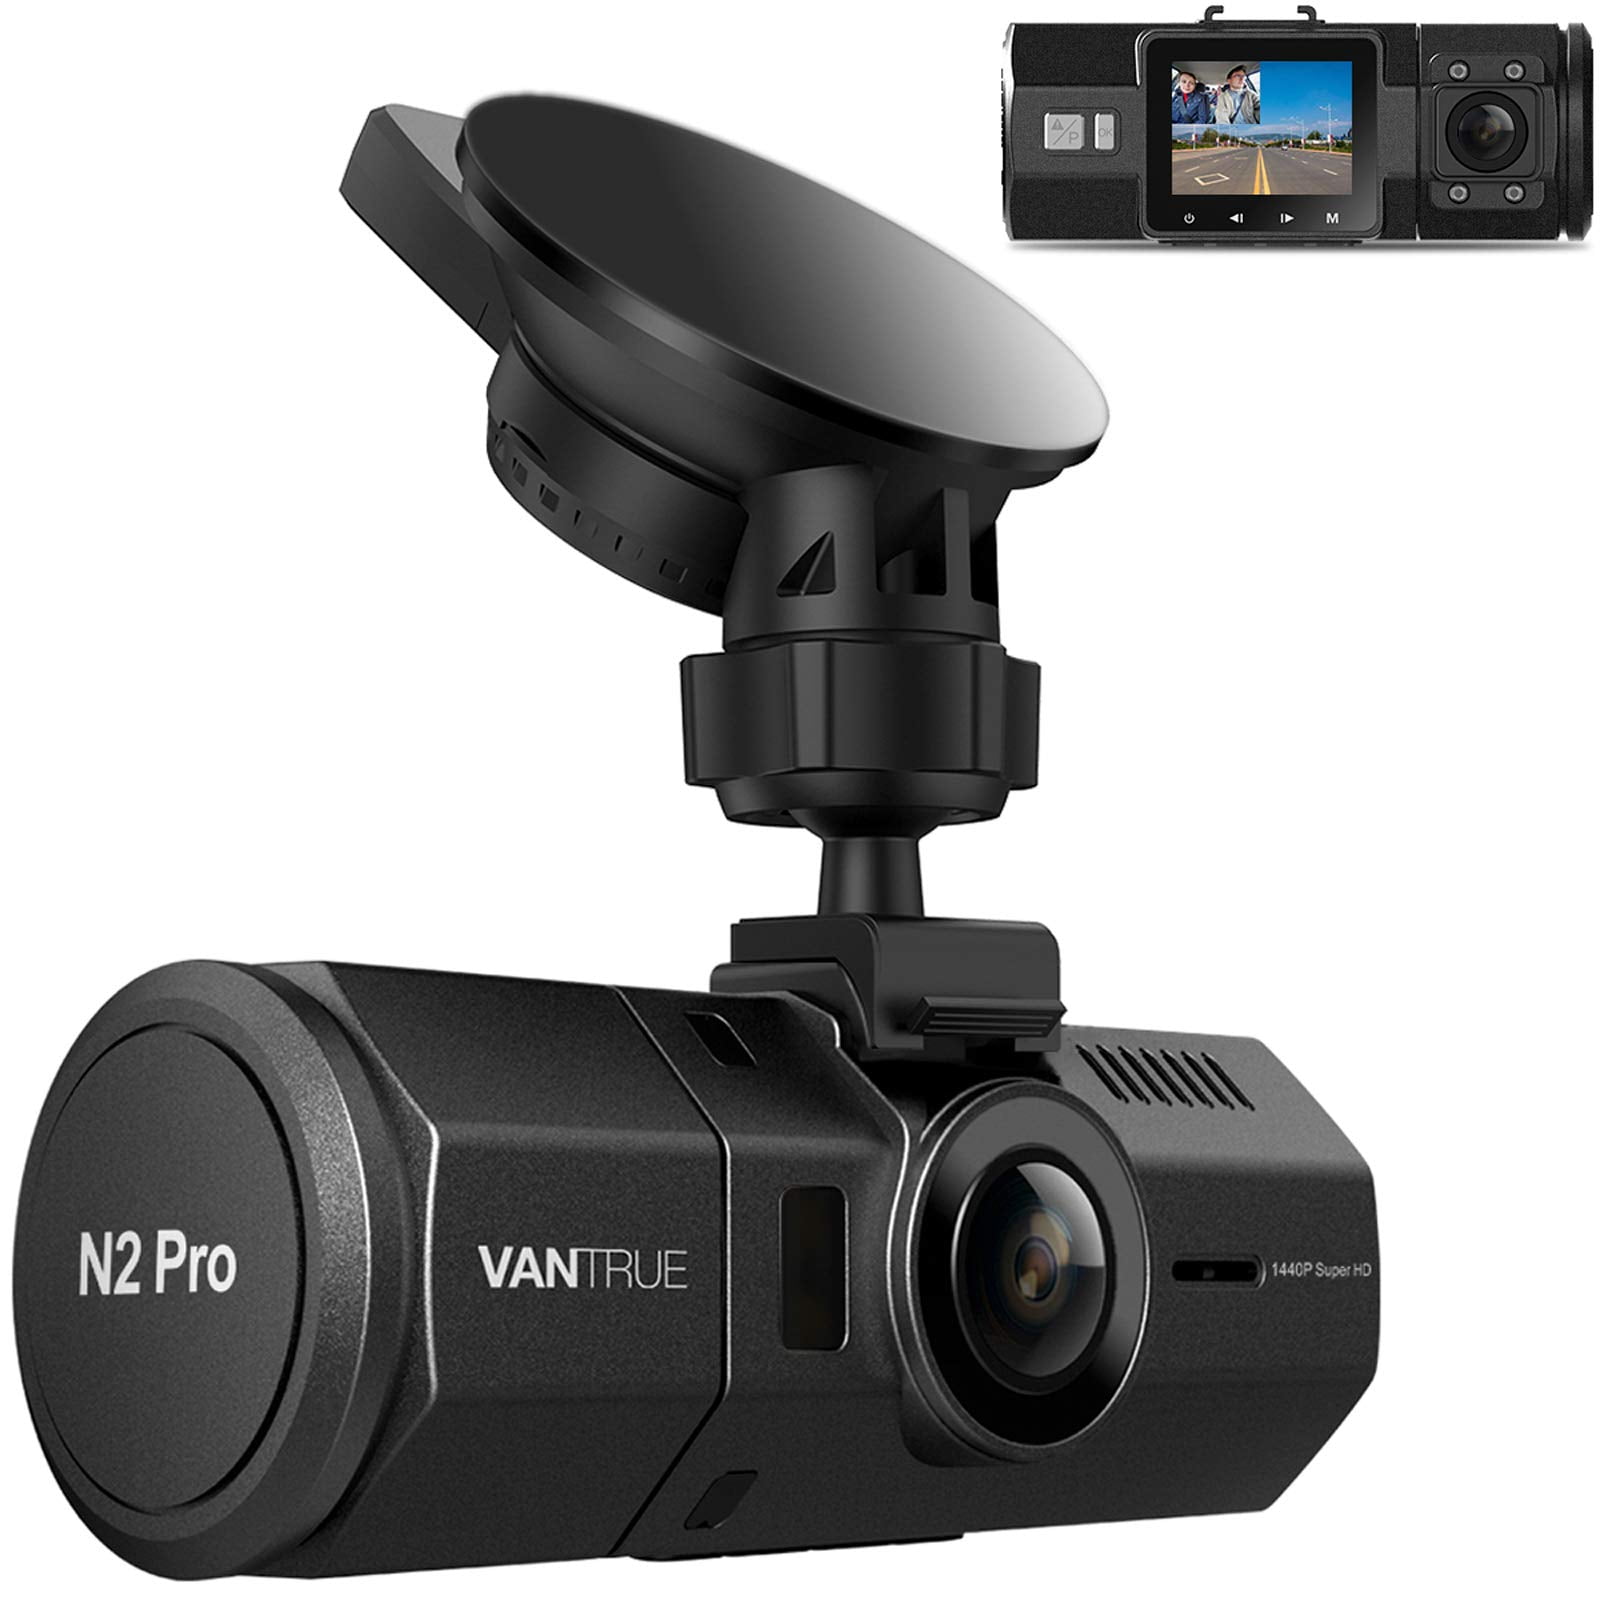 Vantrue N4-G Dual Dash Cam 3 Channel 1440P Front & 1080P Inside